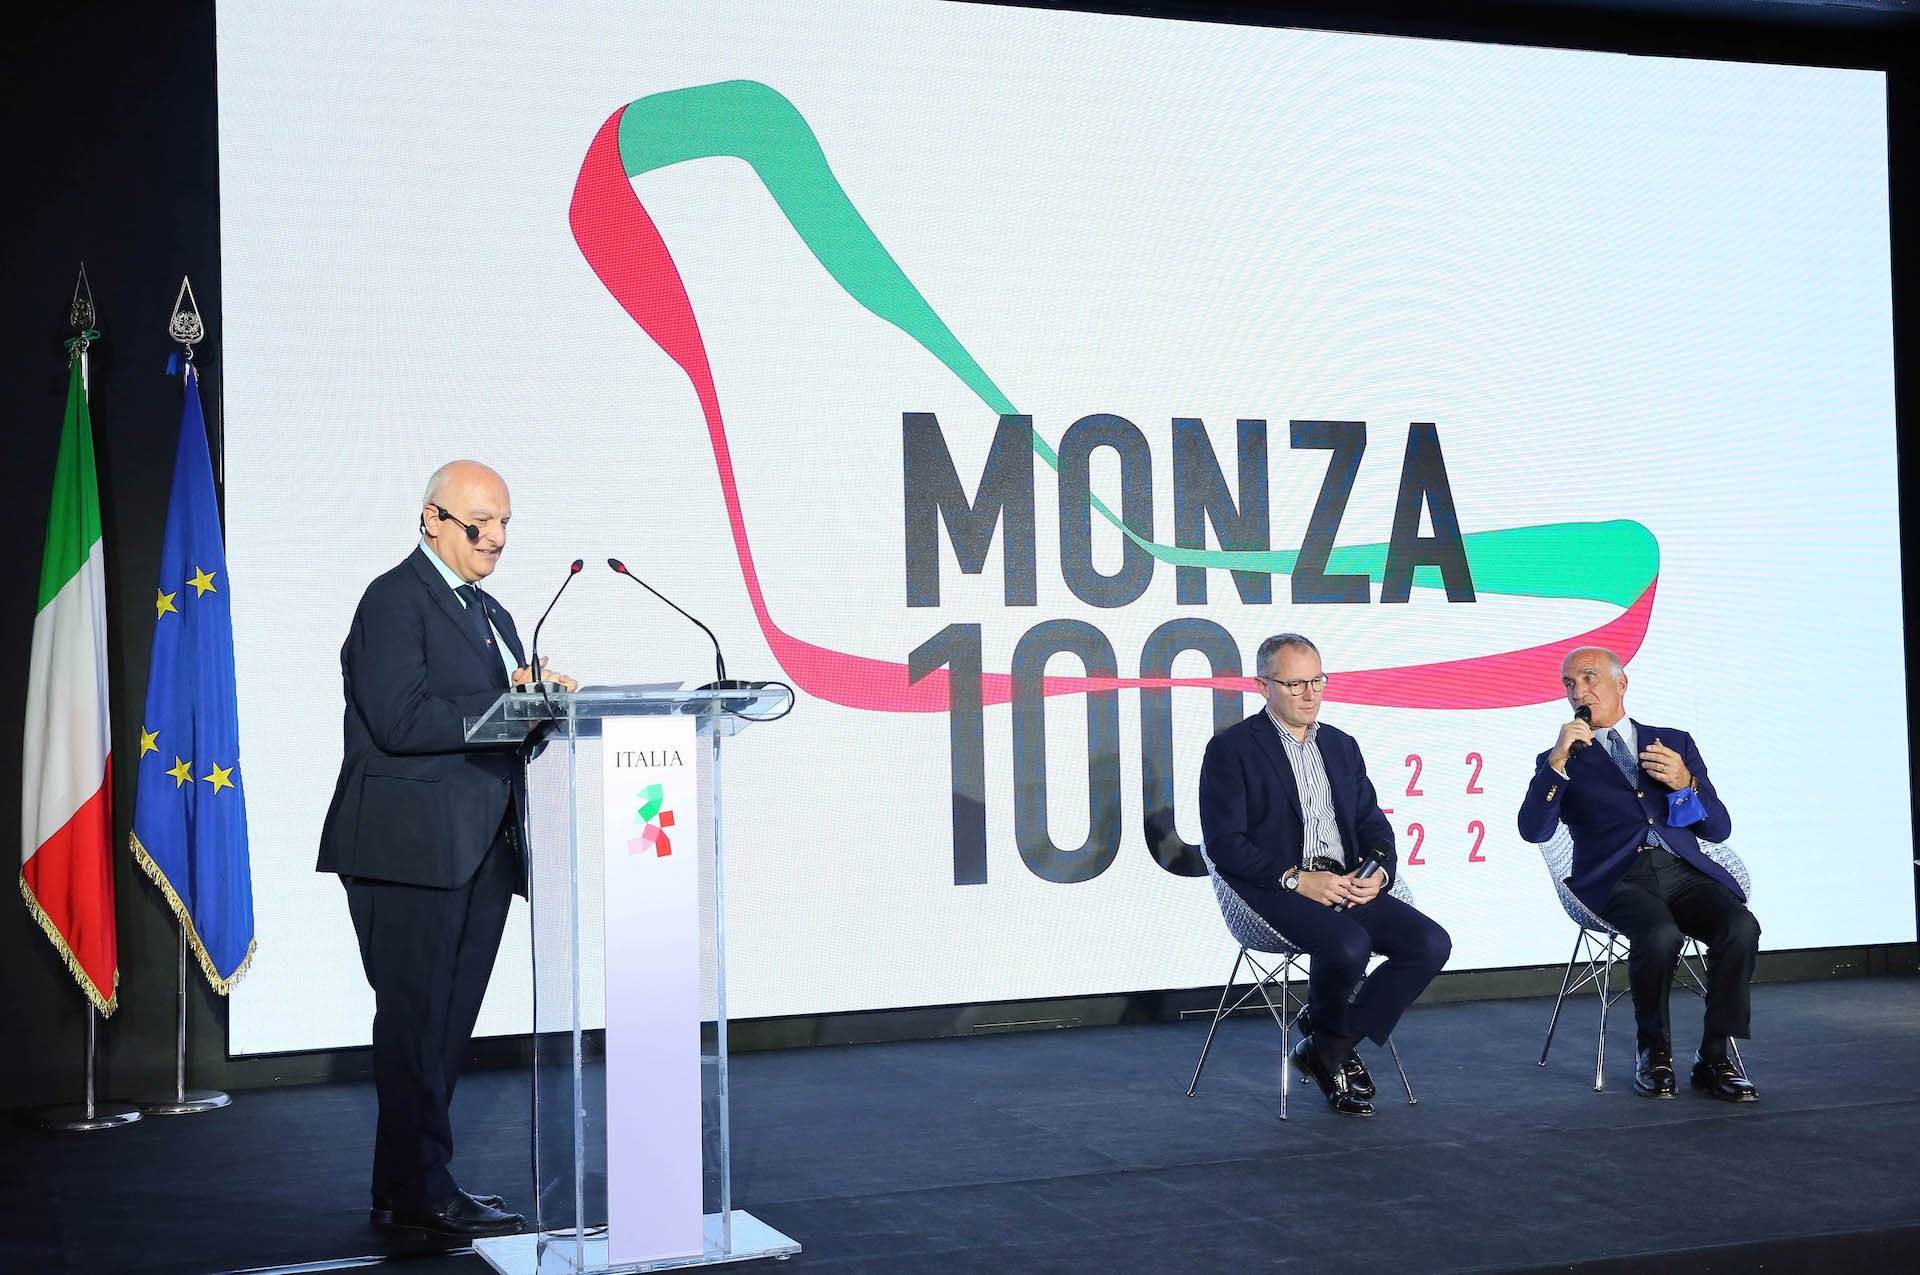 Nazionale Monza celebrates 100th anniversary at the Italian Pavilion in Expo 2020